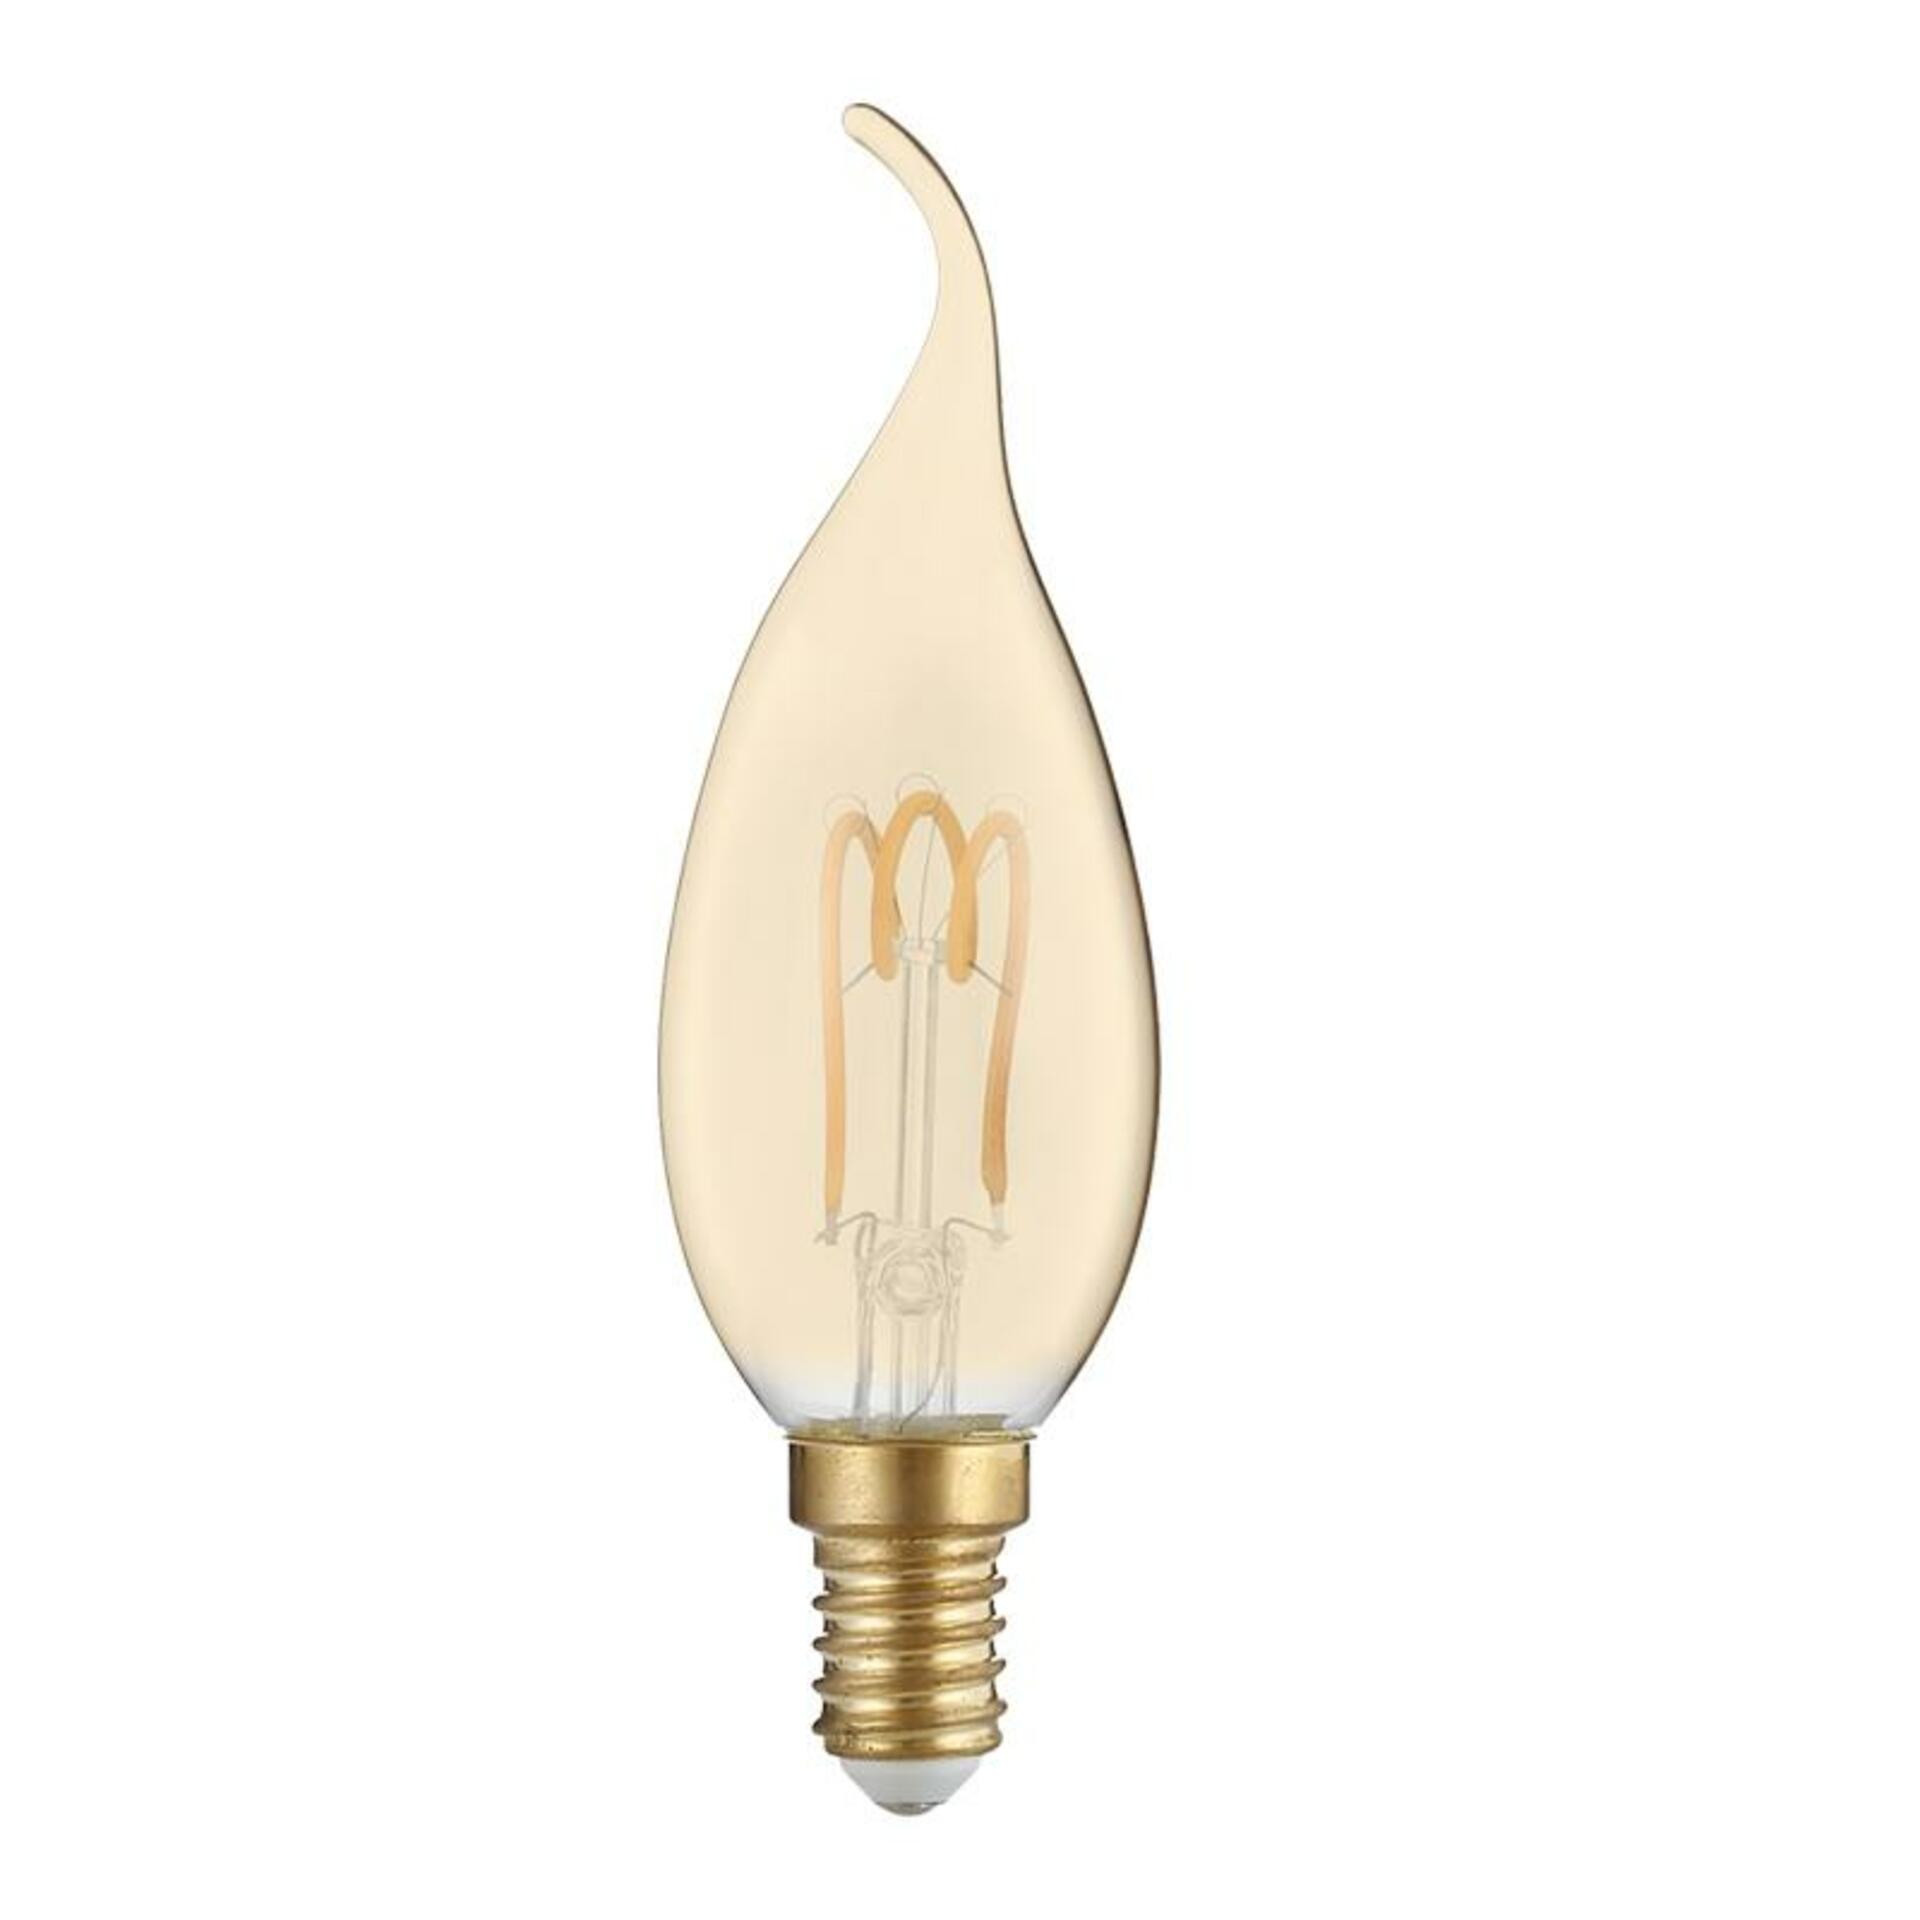 ACA svíčková Spiral filament Amber Tip LED 3W E14 2700K 230V